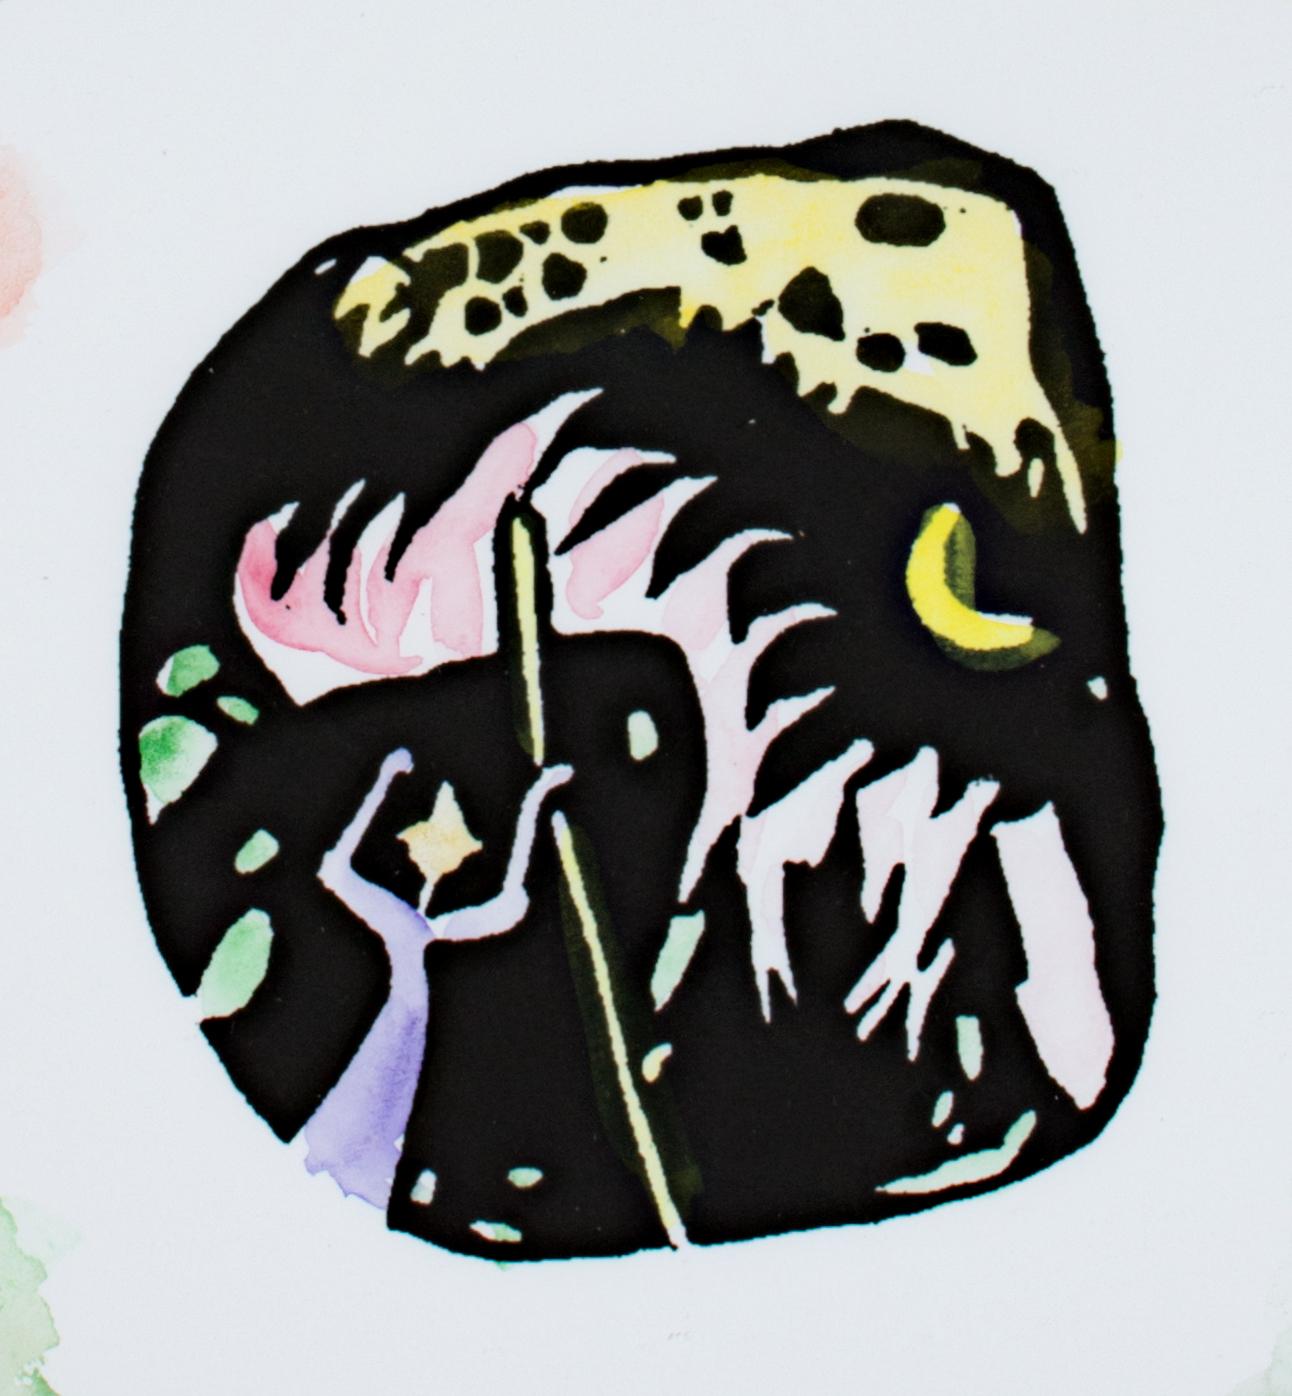 Hommage à Wassily Kandinsky après 1911 orig. de David Barnett. Gravure sur bois de la série Klänge (Sons), titre : Before Spring,' est une peinture originale à l'aquarelle, signée par l'artiste dans le coin inférieur droit. Dans le cadre de la